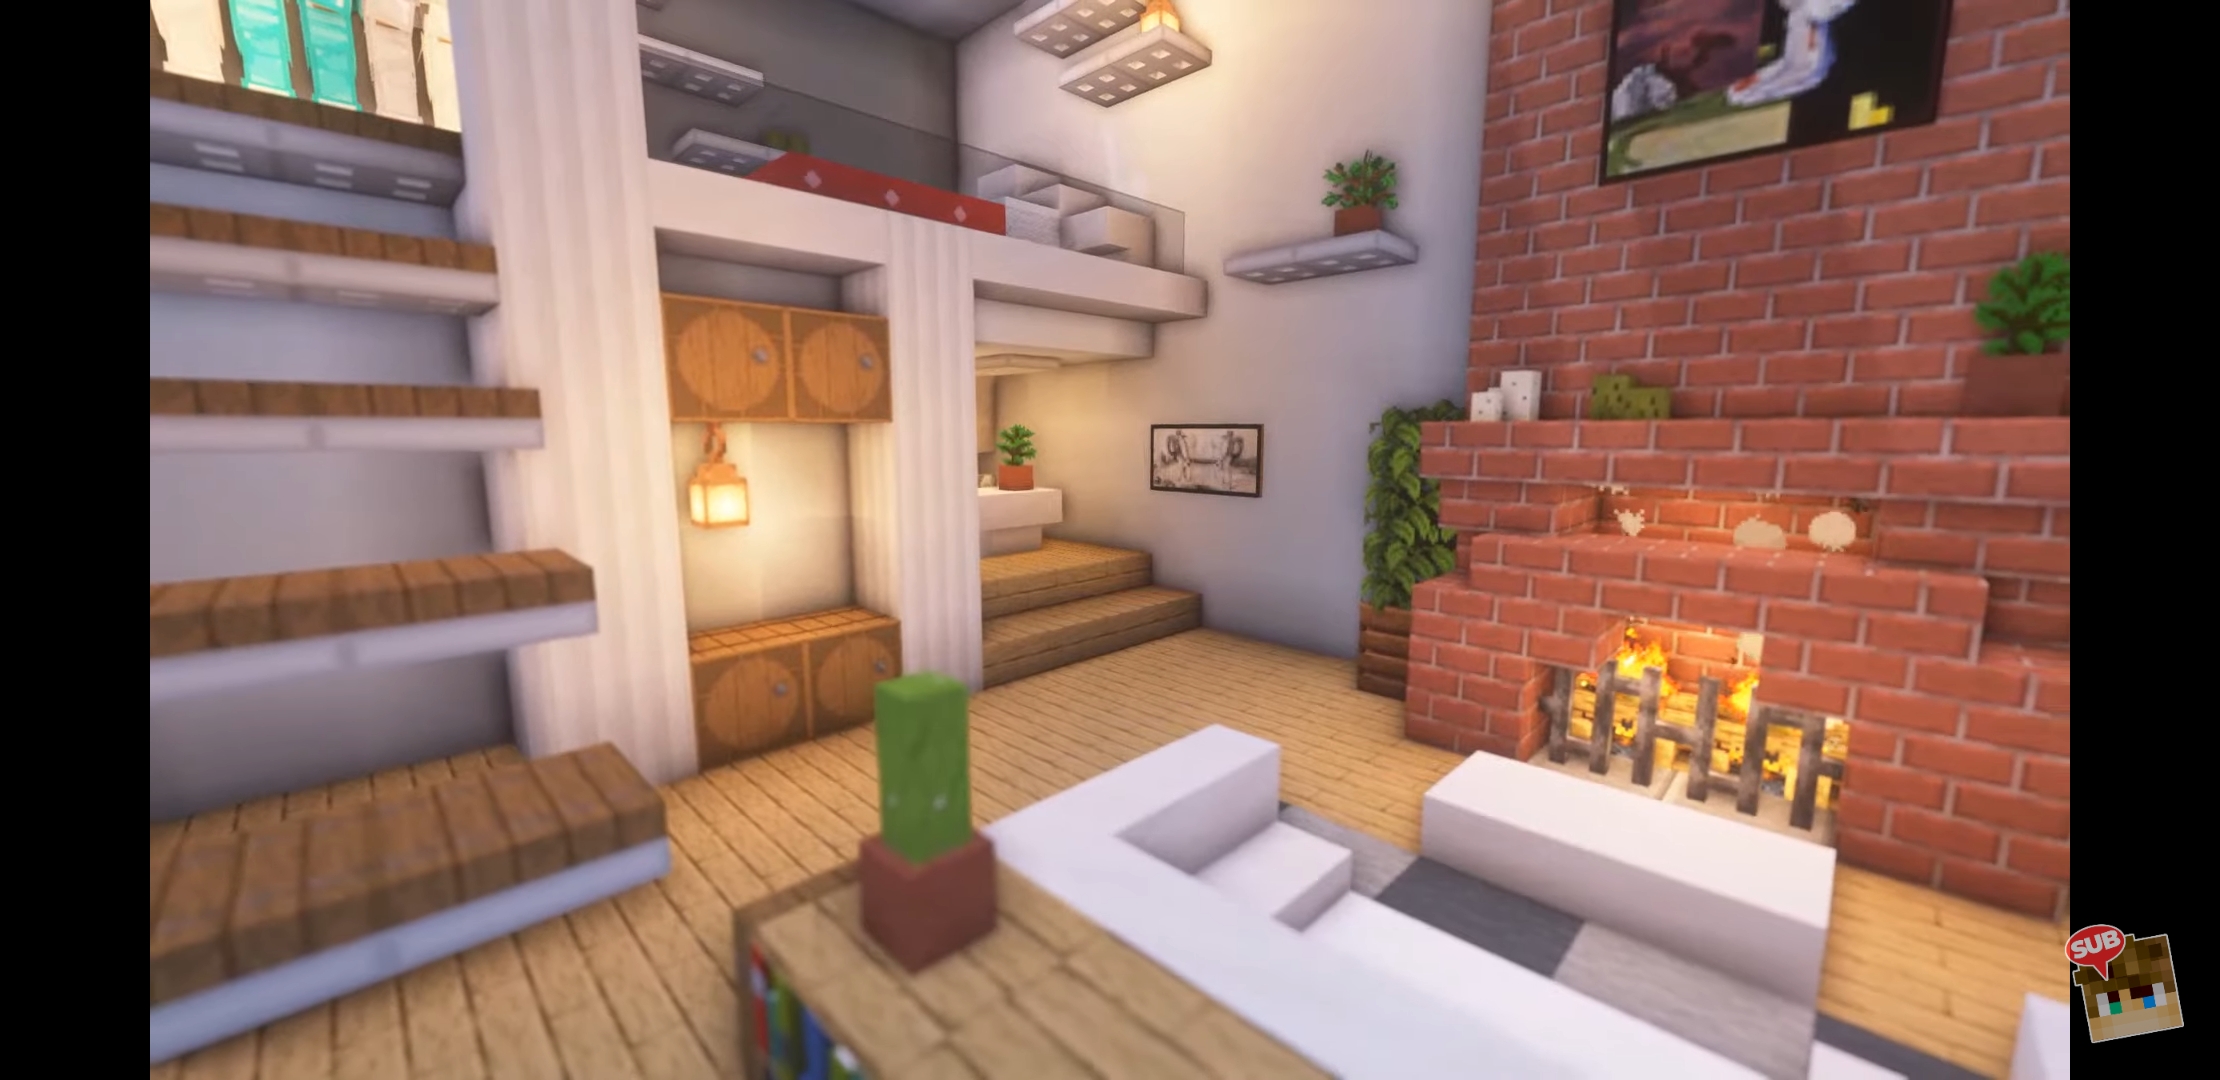 Minecraft Room Ideas